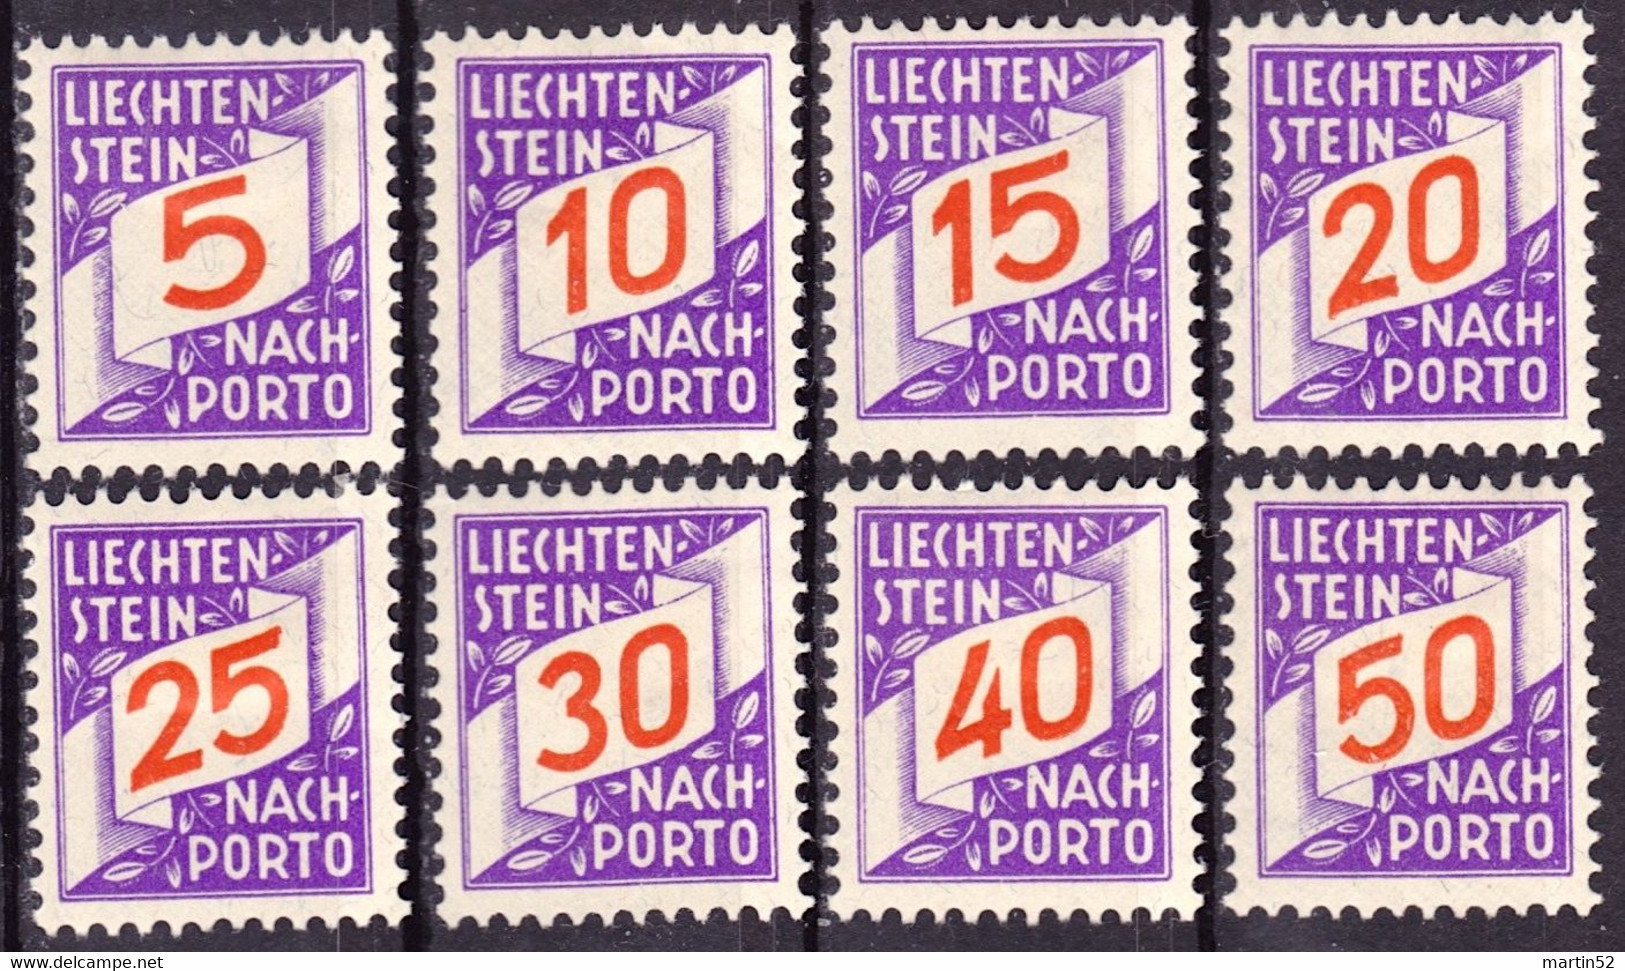 Liechtenstein 1928: ERSTE NACHPORTO-Marken Nr. 13-20 In Schweizer Währung * Falz Charnière MH (Zu CHF 135.00 -50%) - Taxe